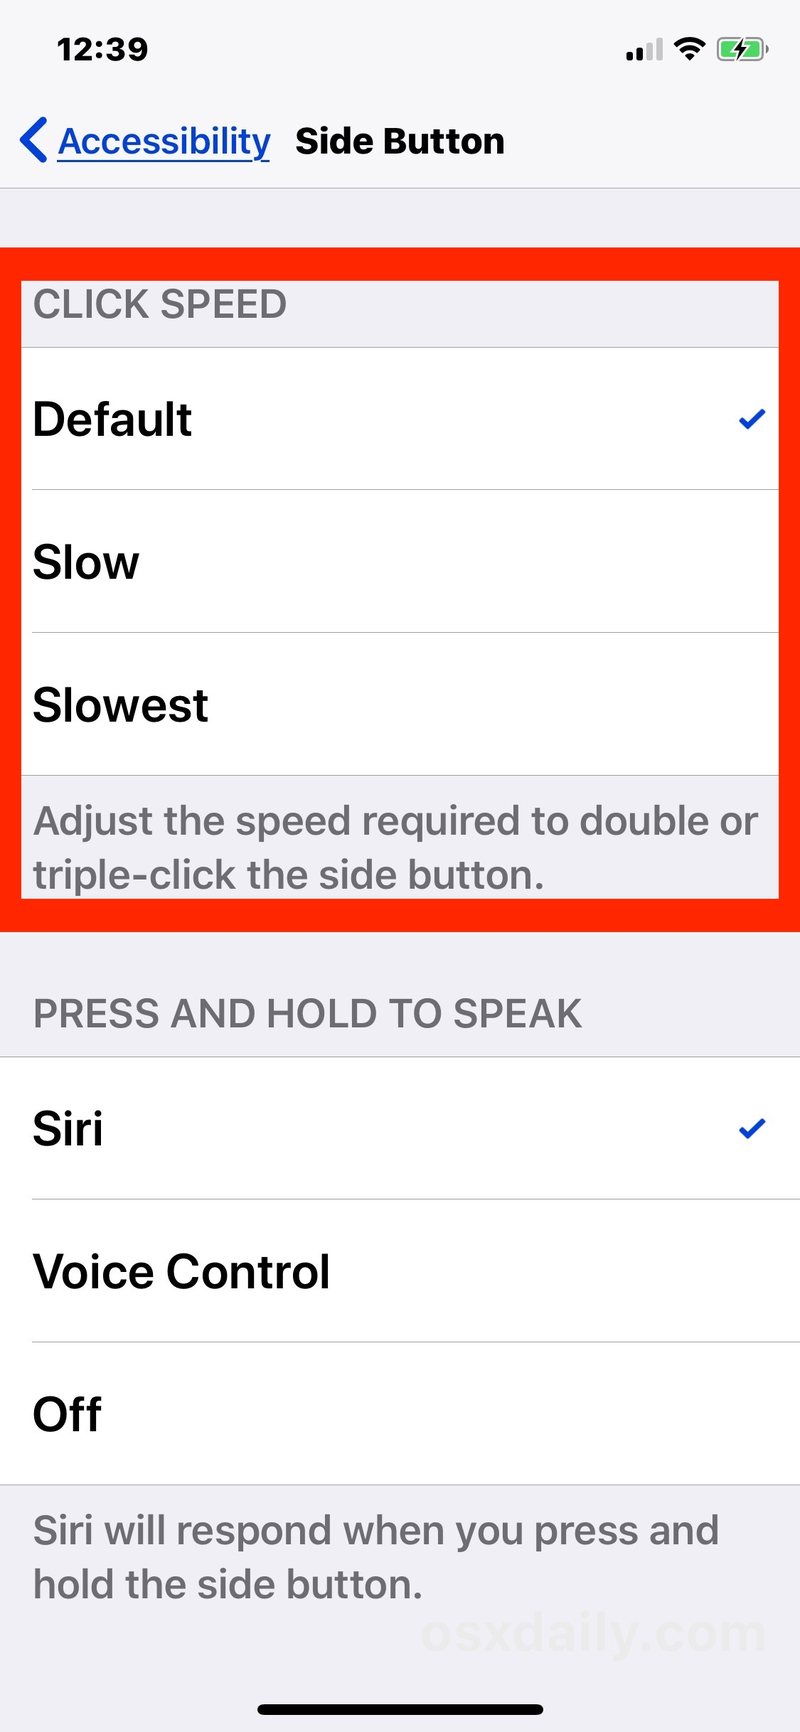 调整侧边按钮的点击速度在 iPhone X 上” />   </p>
<li>满意后退出设置</li>
</ol>
<p>侧边按钮的点击速度会立即发生变化，这让您无需离开“设置”应用即可立即测试差异。当然，您也可以随时返回“设置”重新调整侧边按钮的点击速度。</p>
<p>对于许多用户来说，保留默认设置是合适的，但其他一些 iPhone X 用户可能会喜欢在双击和三次按下 iPhone X 侧边按钮时有更多的回旋余地和宽容度。您可能还会发现降低点击速度实际上有帮助停止不小心调用某些功能，例如 Apple Pay 或辅助功能快捷方式，因为按下速度更加谨慎。亲自尝试一下，看看哪种方法最适合您。</p>
<p>默认情况下，<a href=